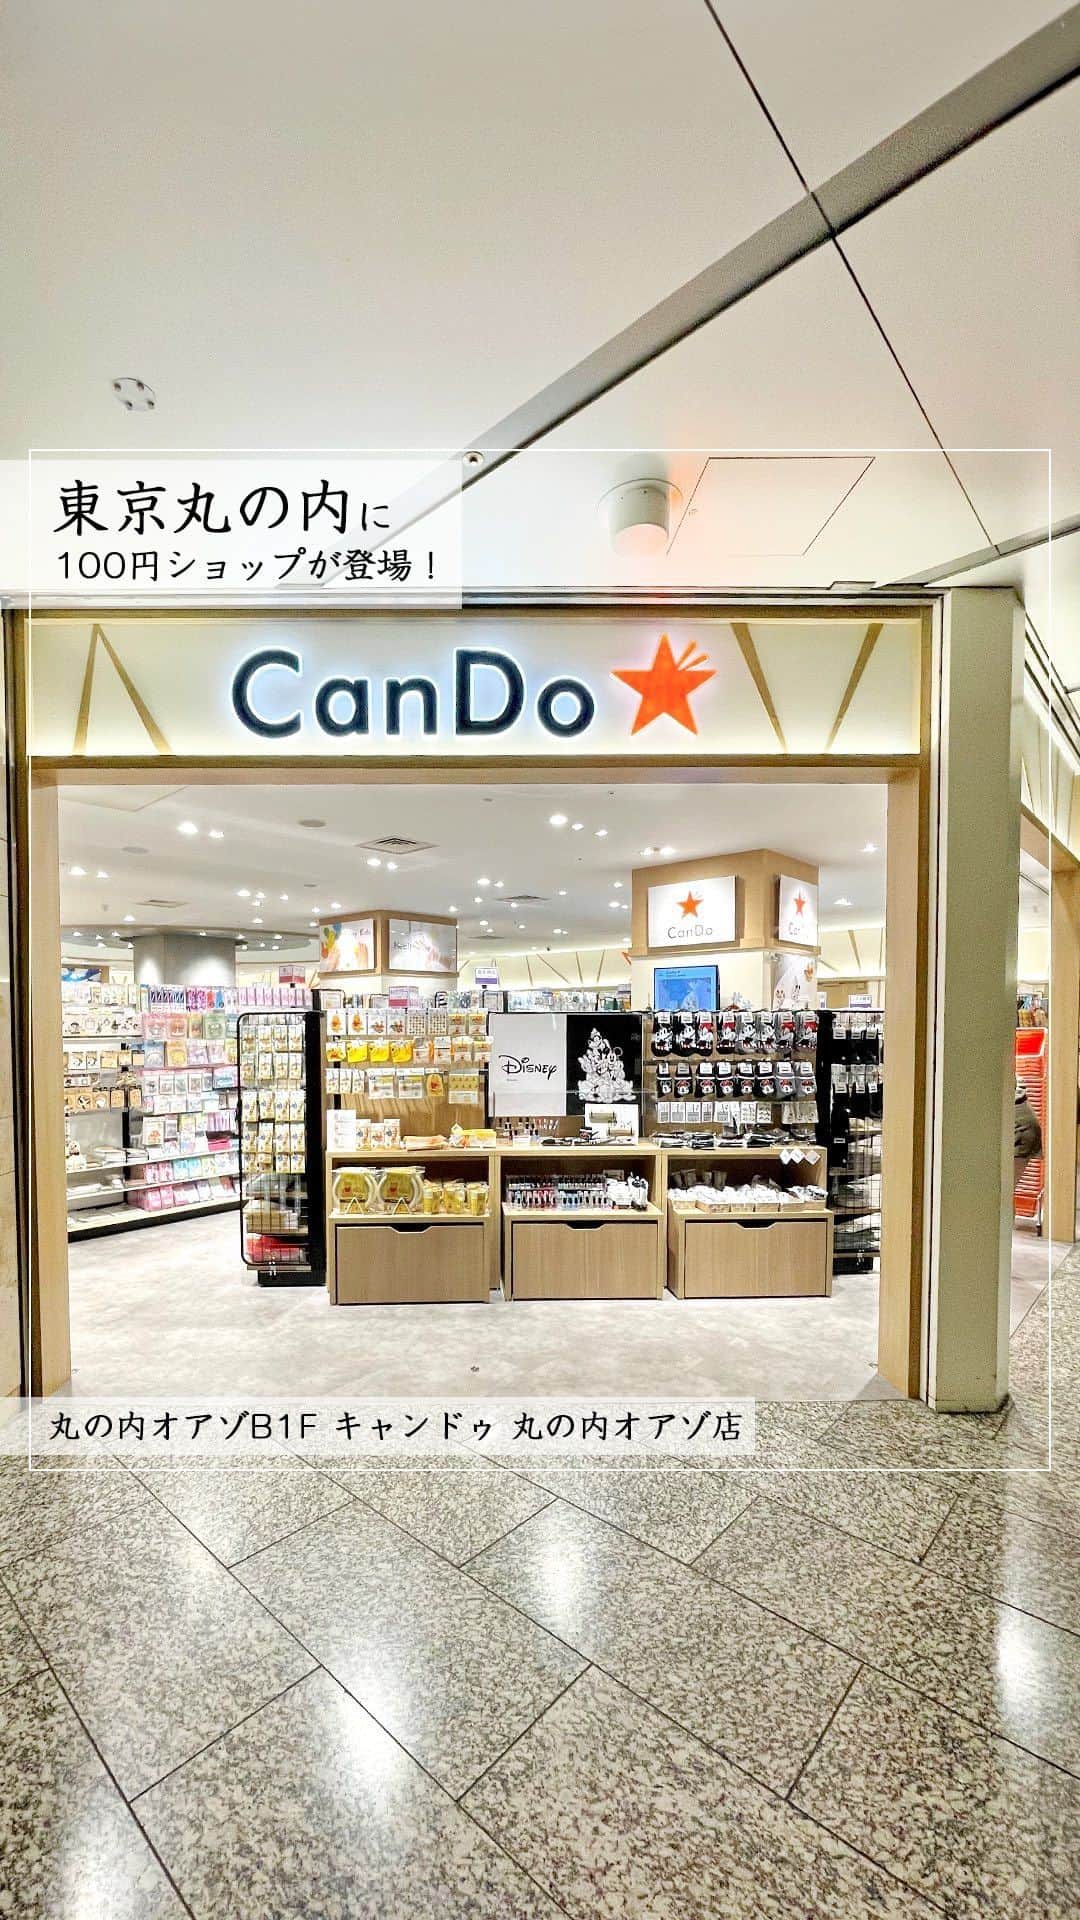 Marunouchi Paperのインスタグラム：「【丸の内に100円ショップが待望のオープン！】 100円ショップ空白エリアと言われていた丸の内に、ついに「キャンドゥ 丸の内オアゾ店」がオープン！ 『まいにちに発見を。』をスローガンに、発信をコンセプトとした“ライフスタイル提案型100円ショップ”が登場しました。  東京駅直結の広い店内には約15,000点もの商品が並び、毎週発売される新商品に合わせ常に入れ替えが行われています。  仕事用の文房具や事務用品、出張準備にトラベル用品、スマホ関連のグッズ… 日々のニーズに答えるラインアップに近隣ワーカーも大満足。  オフィス以外でも活躍する収納用品や、キッチン用品に掃除洗濯用品からお子様の学用品、推し活グッズまで幅広く展開。 歩いているだけでワクワクする店内は、「便利！」「かわいい！」「お得！」など、さまざまな発見にあふれています。  季節商品を気軽に楽しめるのも100円ショップの魅力の1つ。 今年のクリスマスの準備は「キャンドゥ 丸の内オアゾ店」にお任せを。 また、10月から展開しているディズニー創立100周年記念「ディズニー100」シリーズもお見逃しなく。  8：00～22：00までの営業時間で、出社前や仕事終わり、夕食後にも立ち寄りが可能。（土日祝は9：00～21：00） 必需品の購入はもちろん、新たな発見を探しに訪れてみて。  ———————————————— キャンドゥ 丸の内オアゾ店【100円ショップ】丸の内オアゾB1F TEL：03-6206-3388 ※動画内には100円以上の価格の商品も含まれています。ご購入の際に店頭でご確認ください。 ※無くなり次第終了となる商品もございますので、ご了承ください。 ————————————————  #marunouchi_paper #marunouchi #tokyo #マルノウチペーパー #丸の内 #東京駅 #キャンドゥ丸の内オアゾ店 #キャンドゥ #cando #100円ショップ #100均 #100円均一 #100円shop #キャンドゥパトロール #100均パトロール #100均文具 #100均グッズ #キャンドゥ商品 #ディズニー100 #100均好き #東京駅直結 #駅直結 #新オープン #大手町 #丸の内オアゾ #oazo」